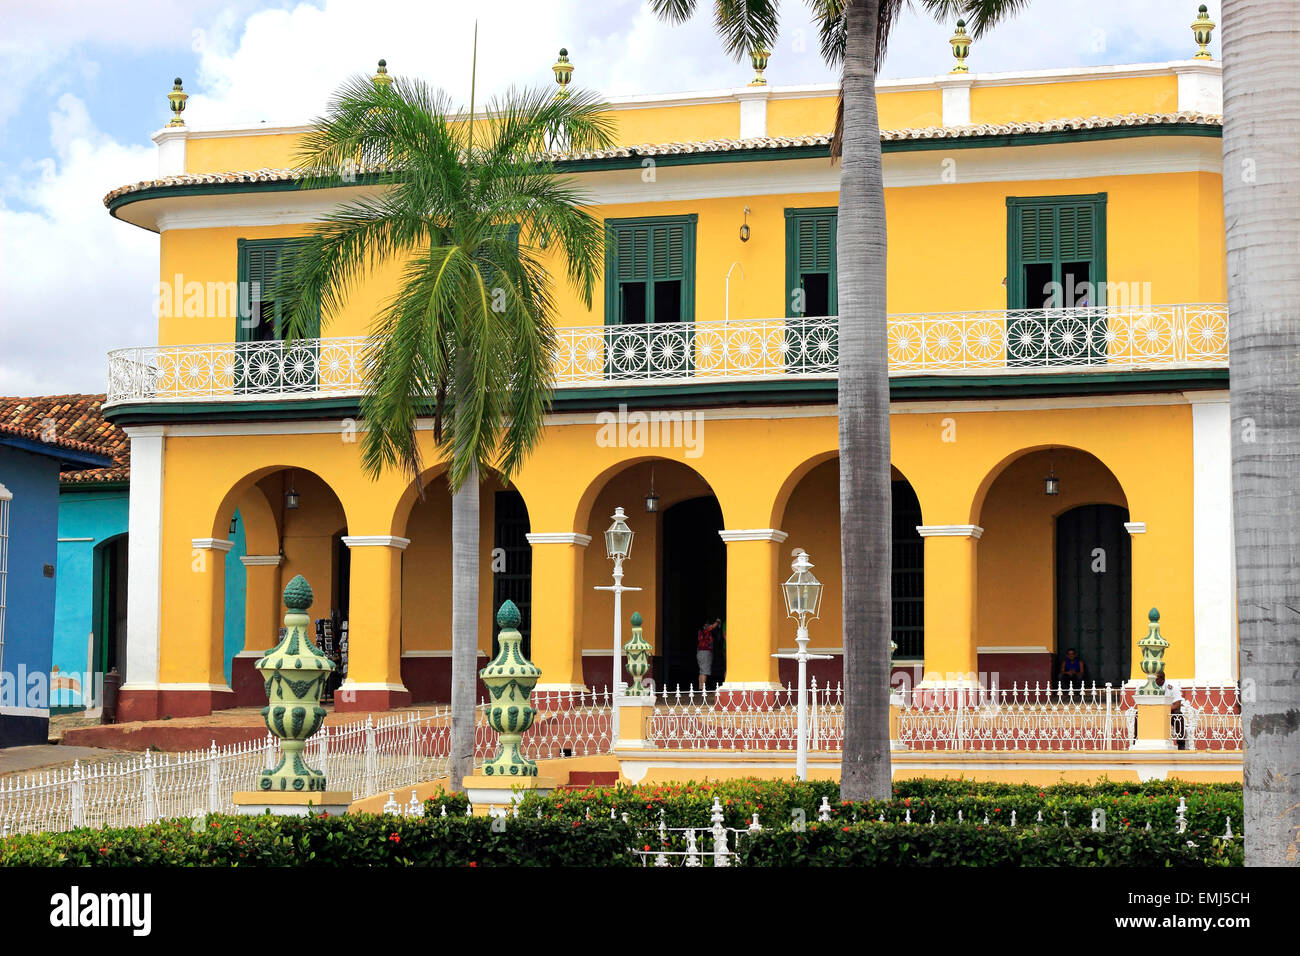 Brunet Palace on the Plaza Mayor Trinidad Cuba Stock Photo